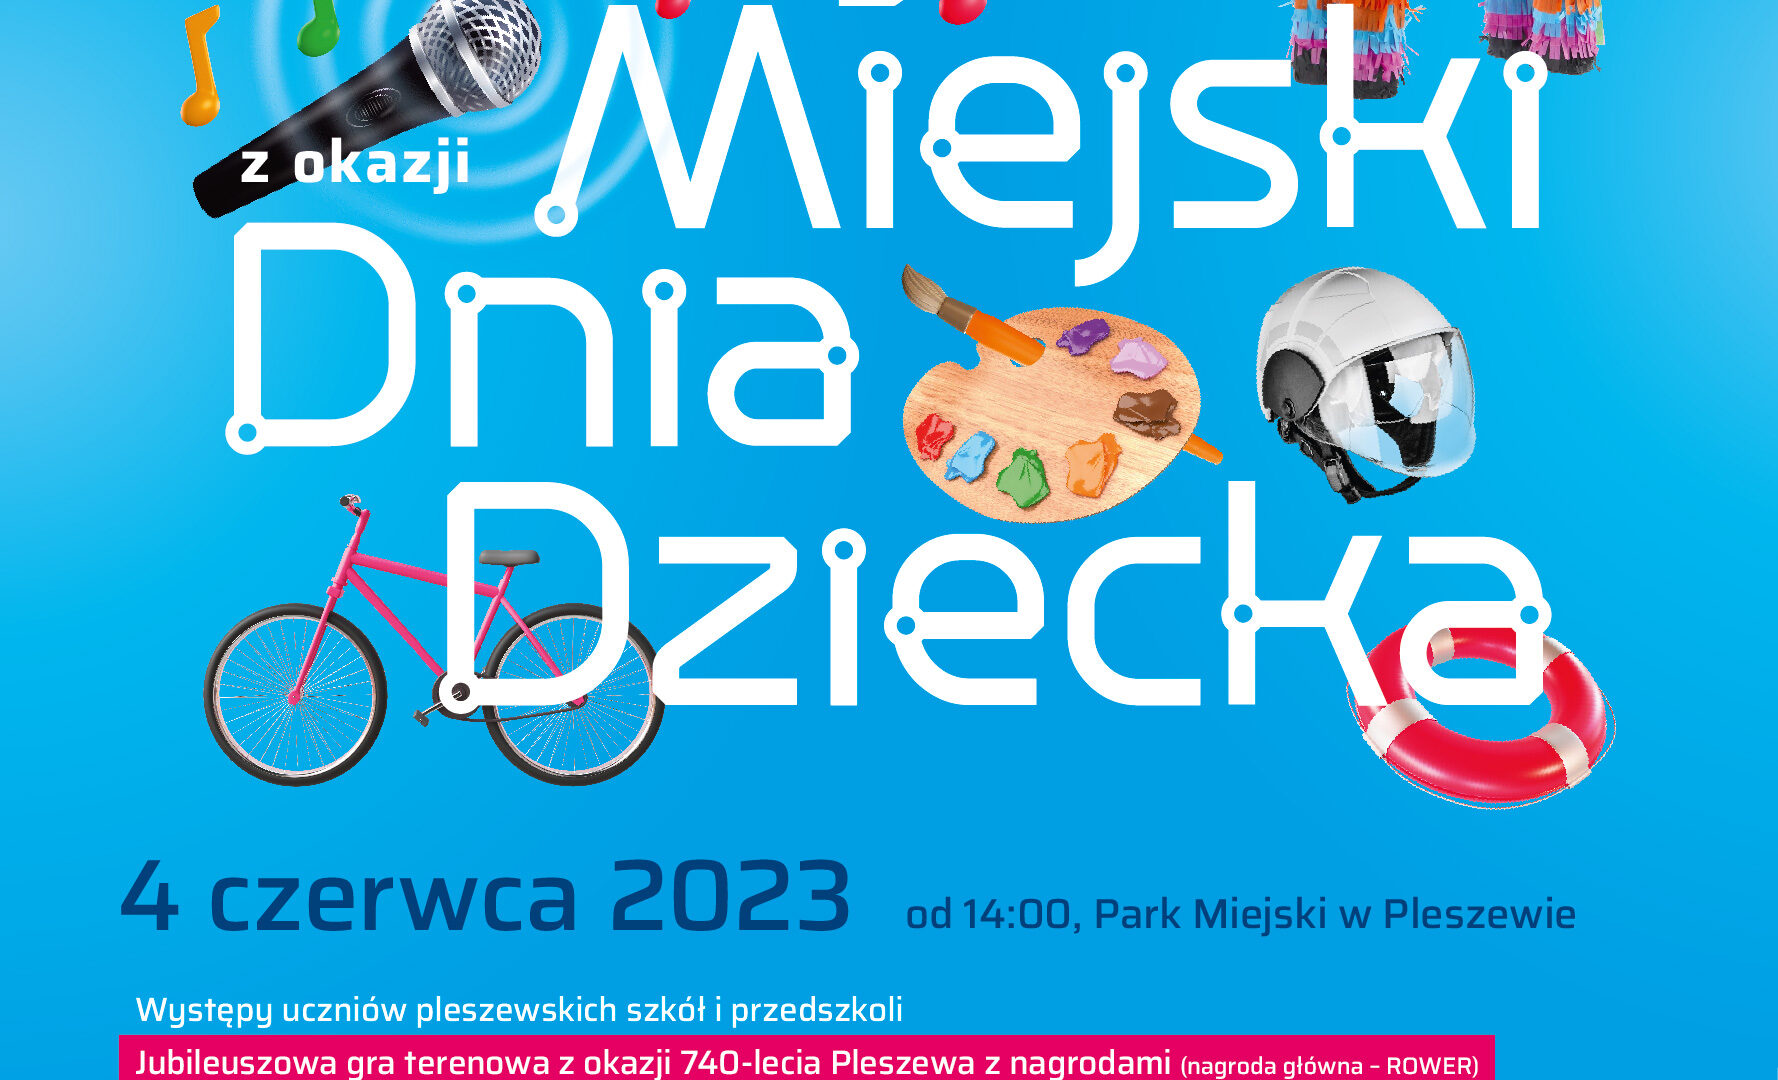 Plakat Festynu Miejskiego z okazji Dnia Dziecka organizowanego w Parku Miejskim w Pleszewie 4 czerwca 2023 roku o godzinie 14:00.